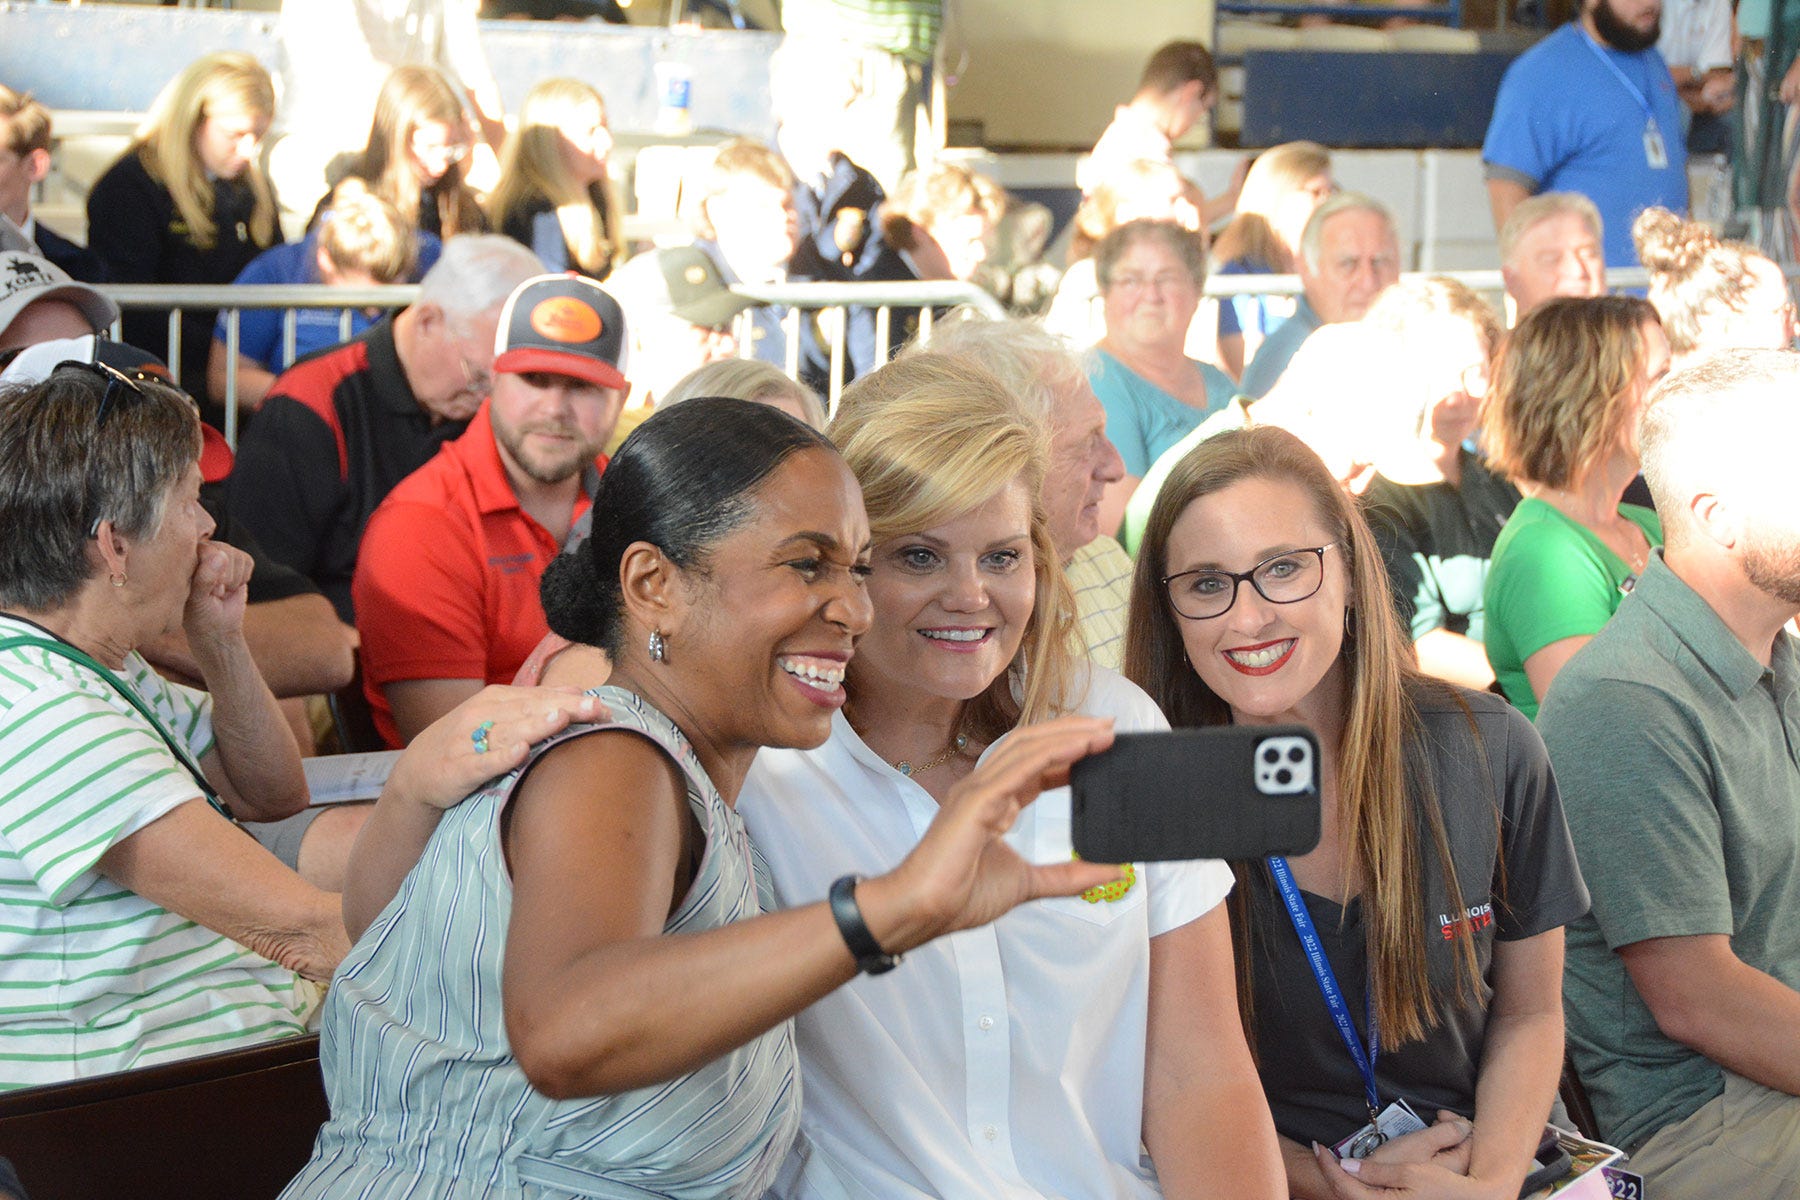 3 women taking a selfie in a crowd of people